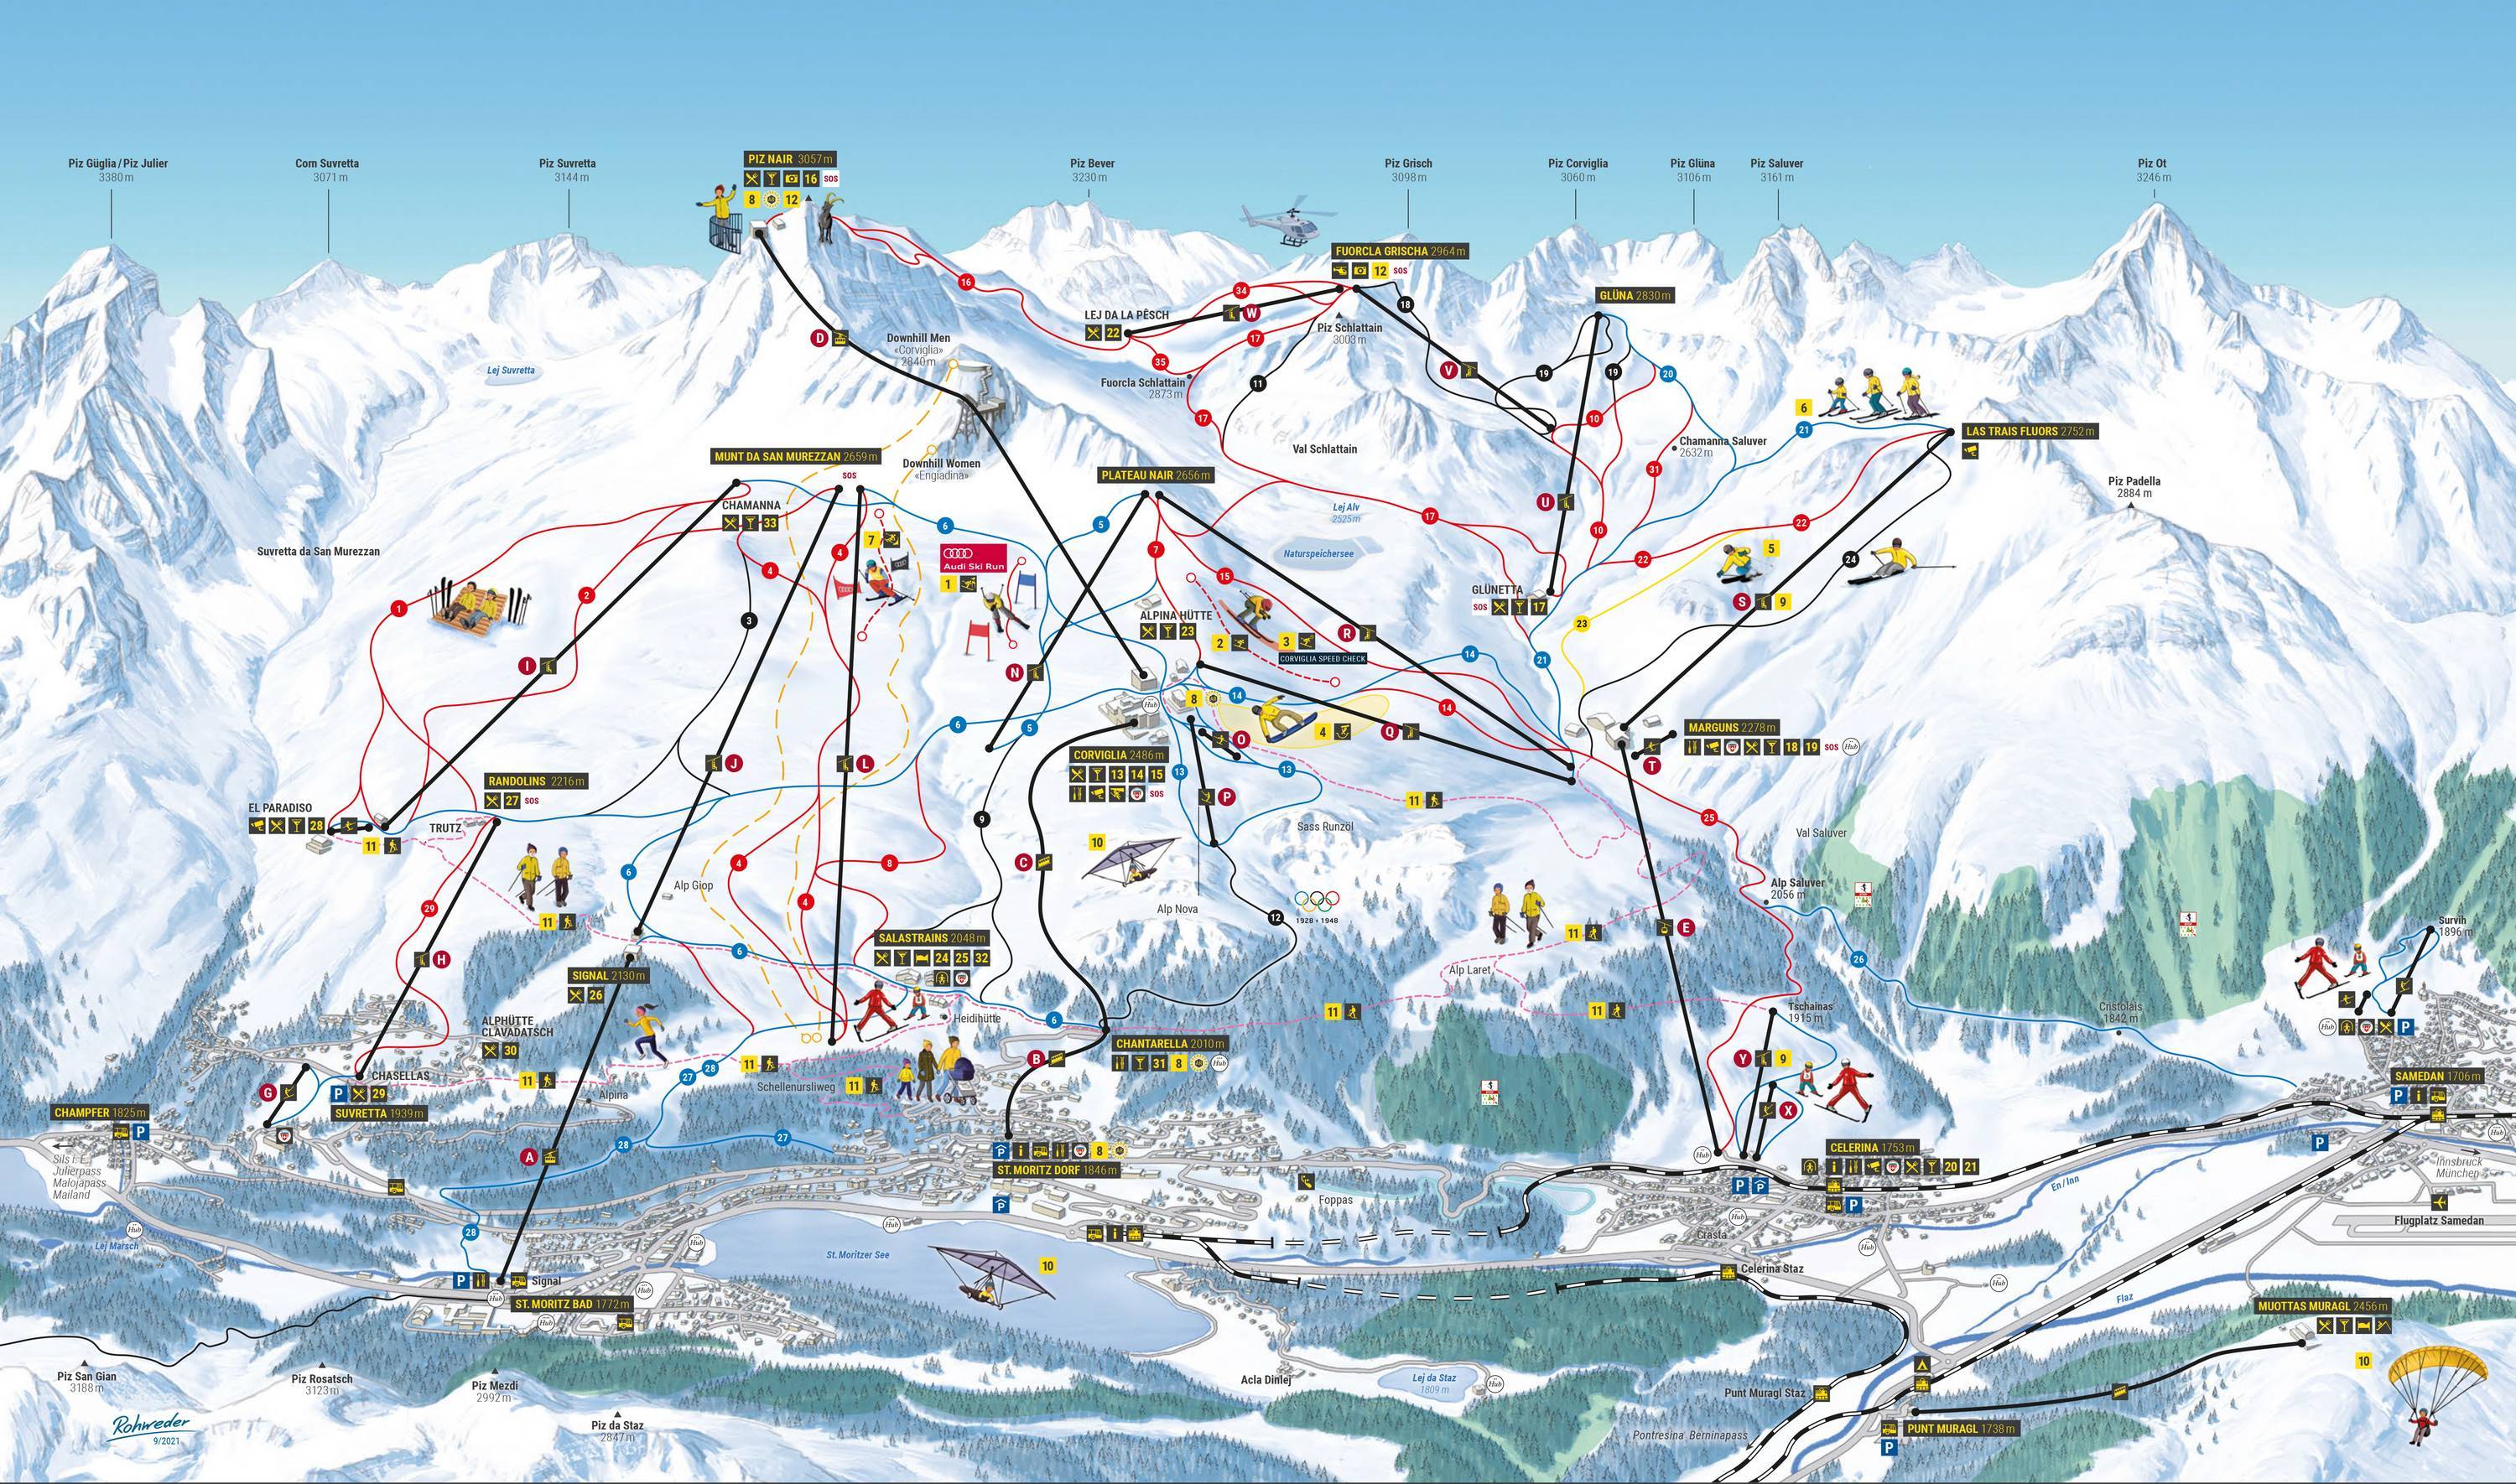 Названия горнолыжных курортов. Сент Мориц курорт. St Moritz Швейцария трассы. Санкт Мориц горнолыжный курорт. Санкт-Мориц Швейцария горнолыжный курорт трассы.